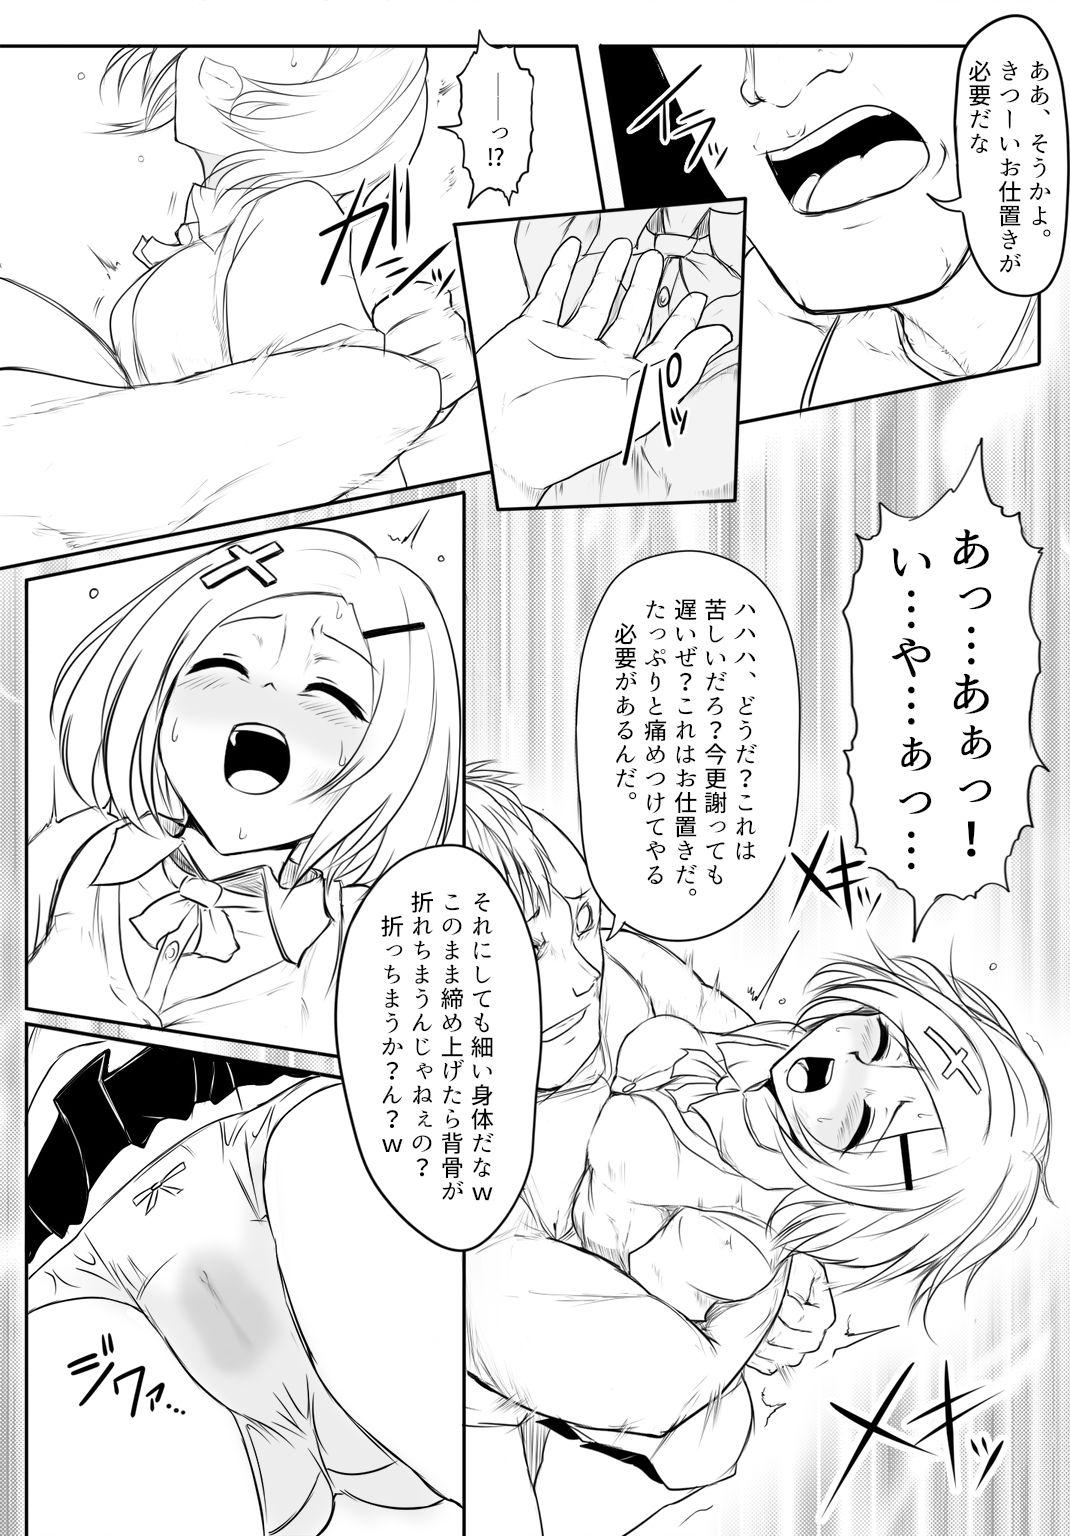 Threesome 暁セイラの受難～凶悪輪姦魔討伐編～ - Original Step - Page 13